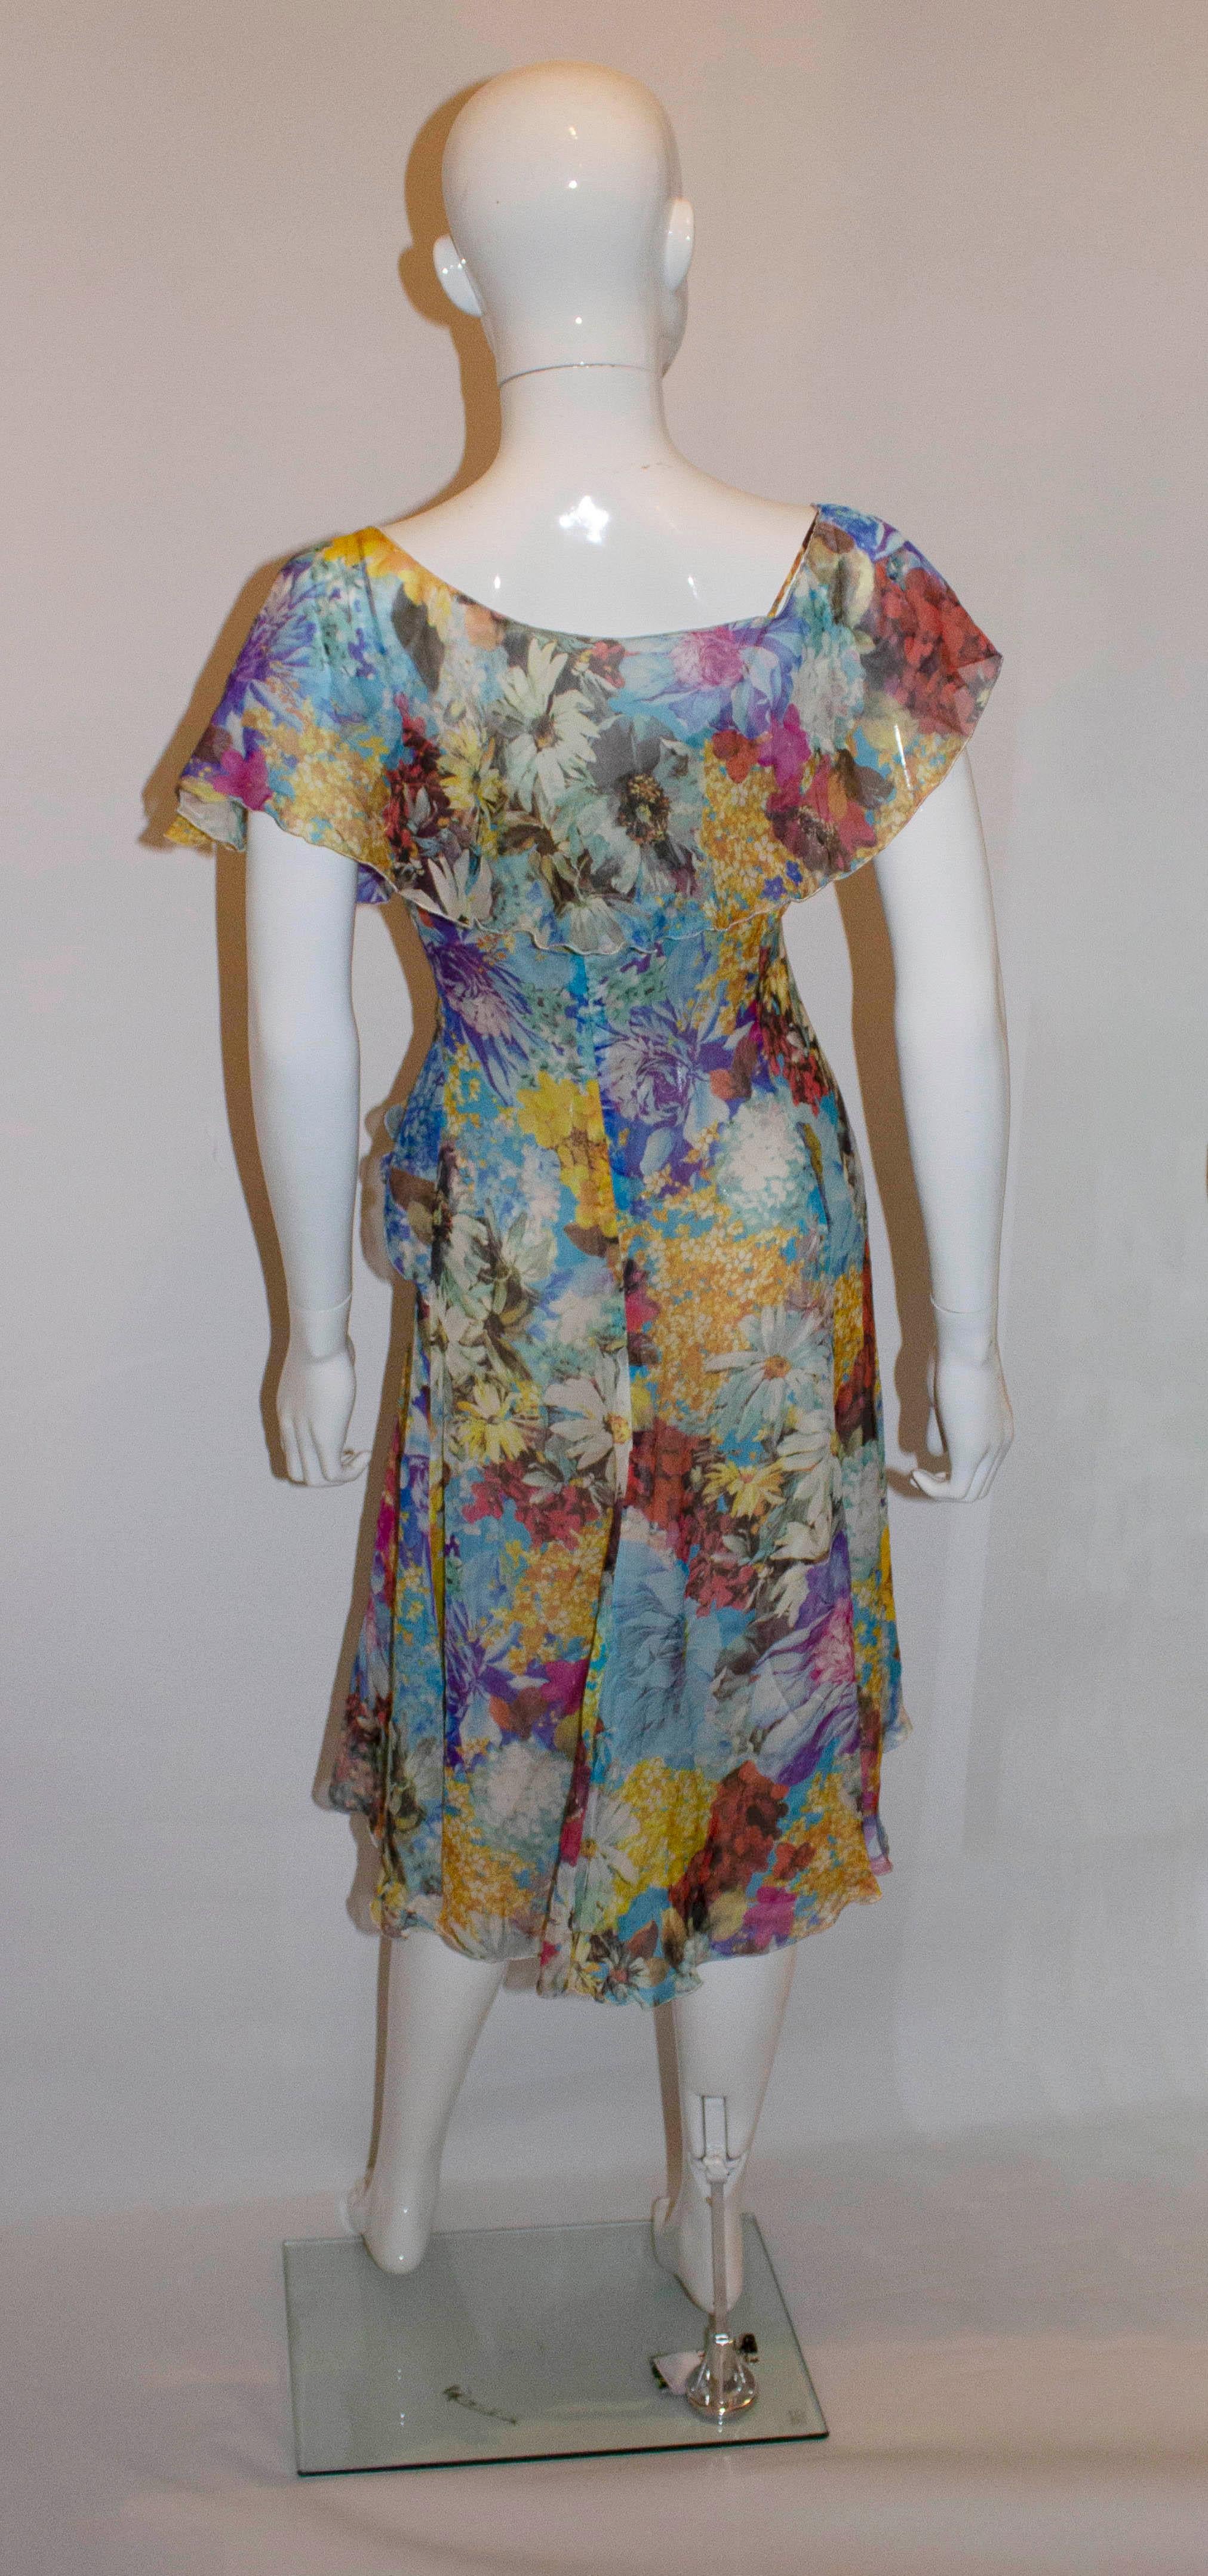 armani floral dress